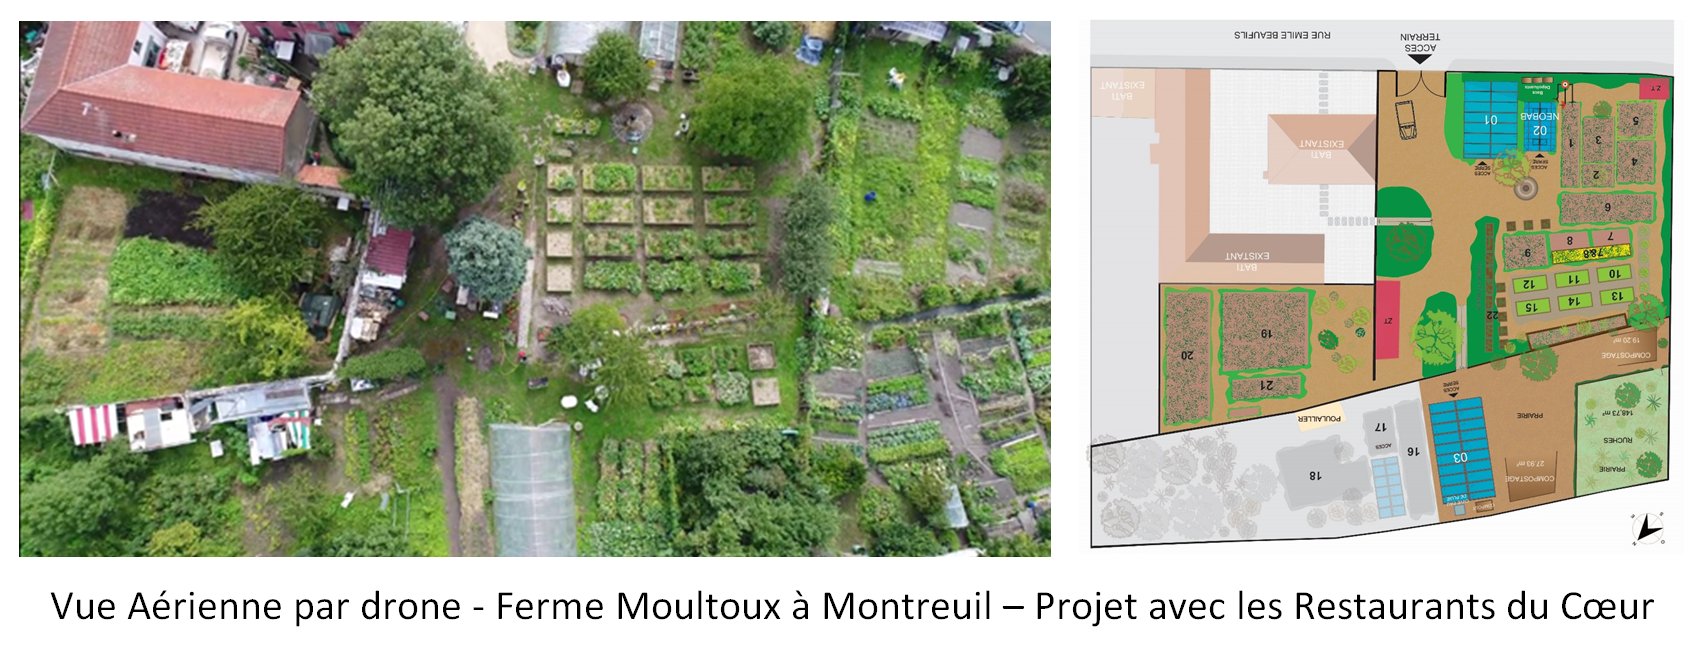 Vue aérienne par drone - Ferme Moultoux à Montreuil - Projet d'aménagement paysager et végétalisation avec les Restaurants du Coeur